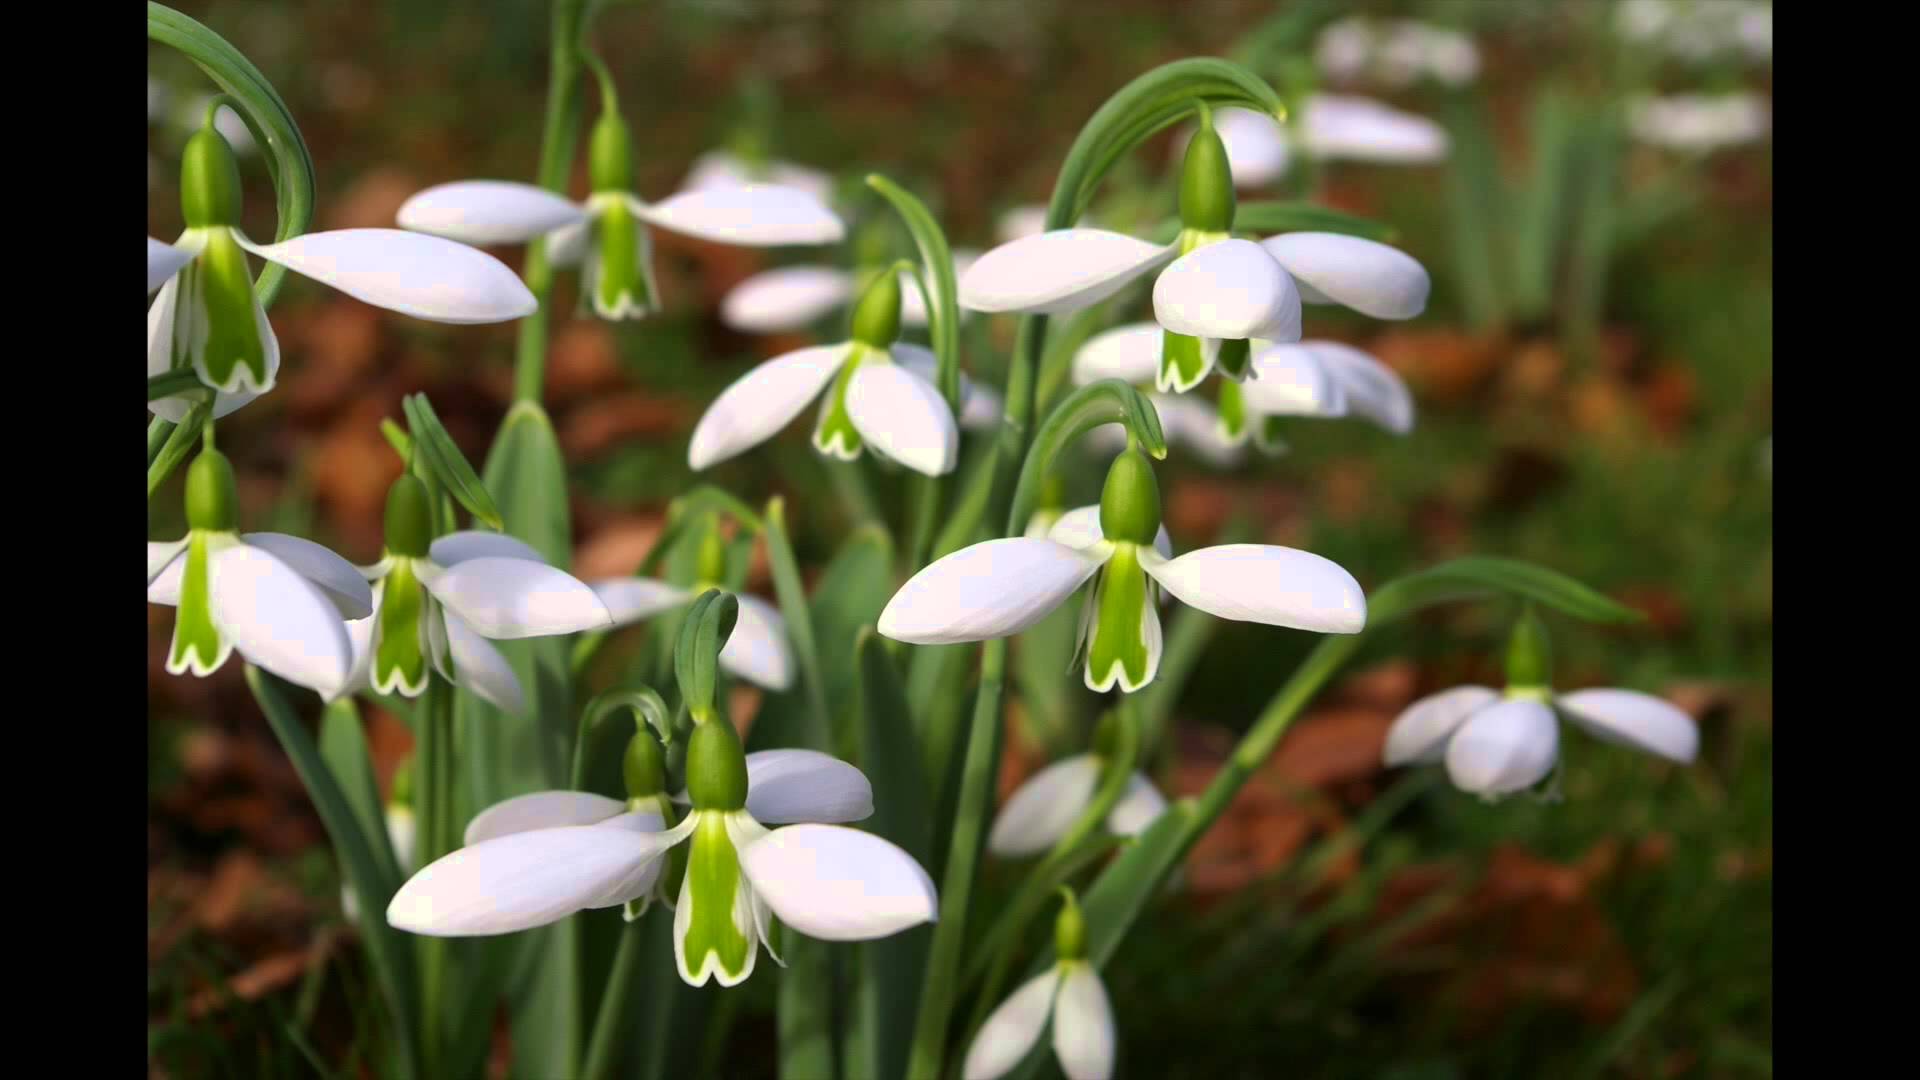 Snowdrop flower brightens Irish winter - YouTube